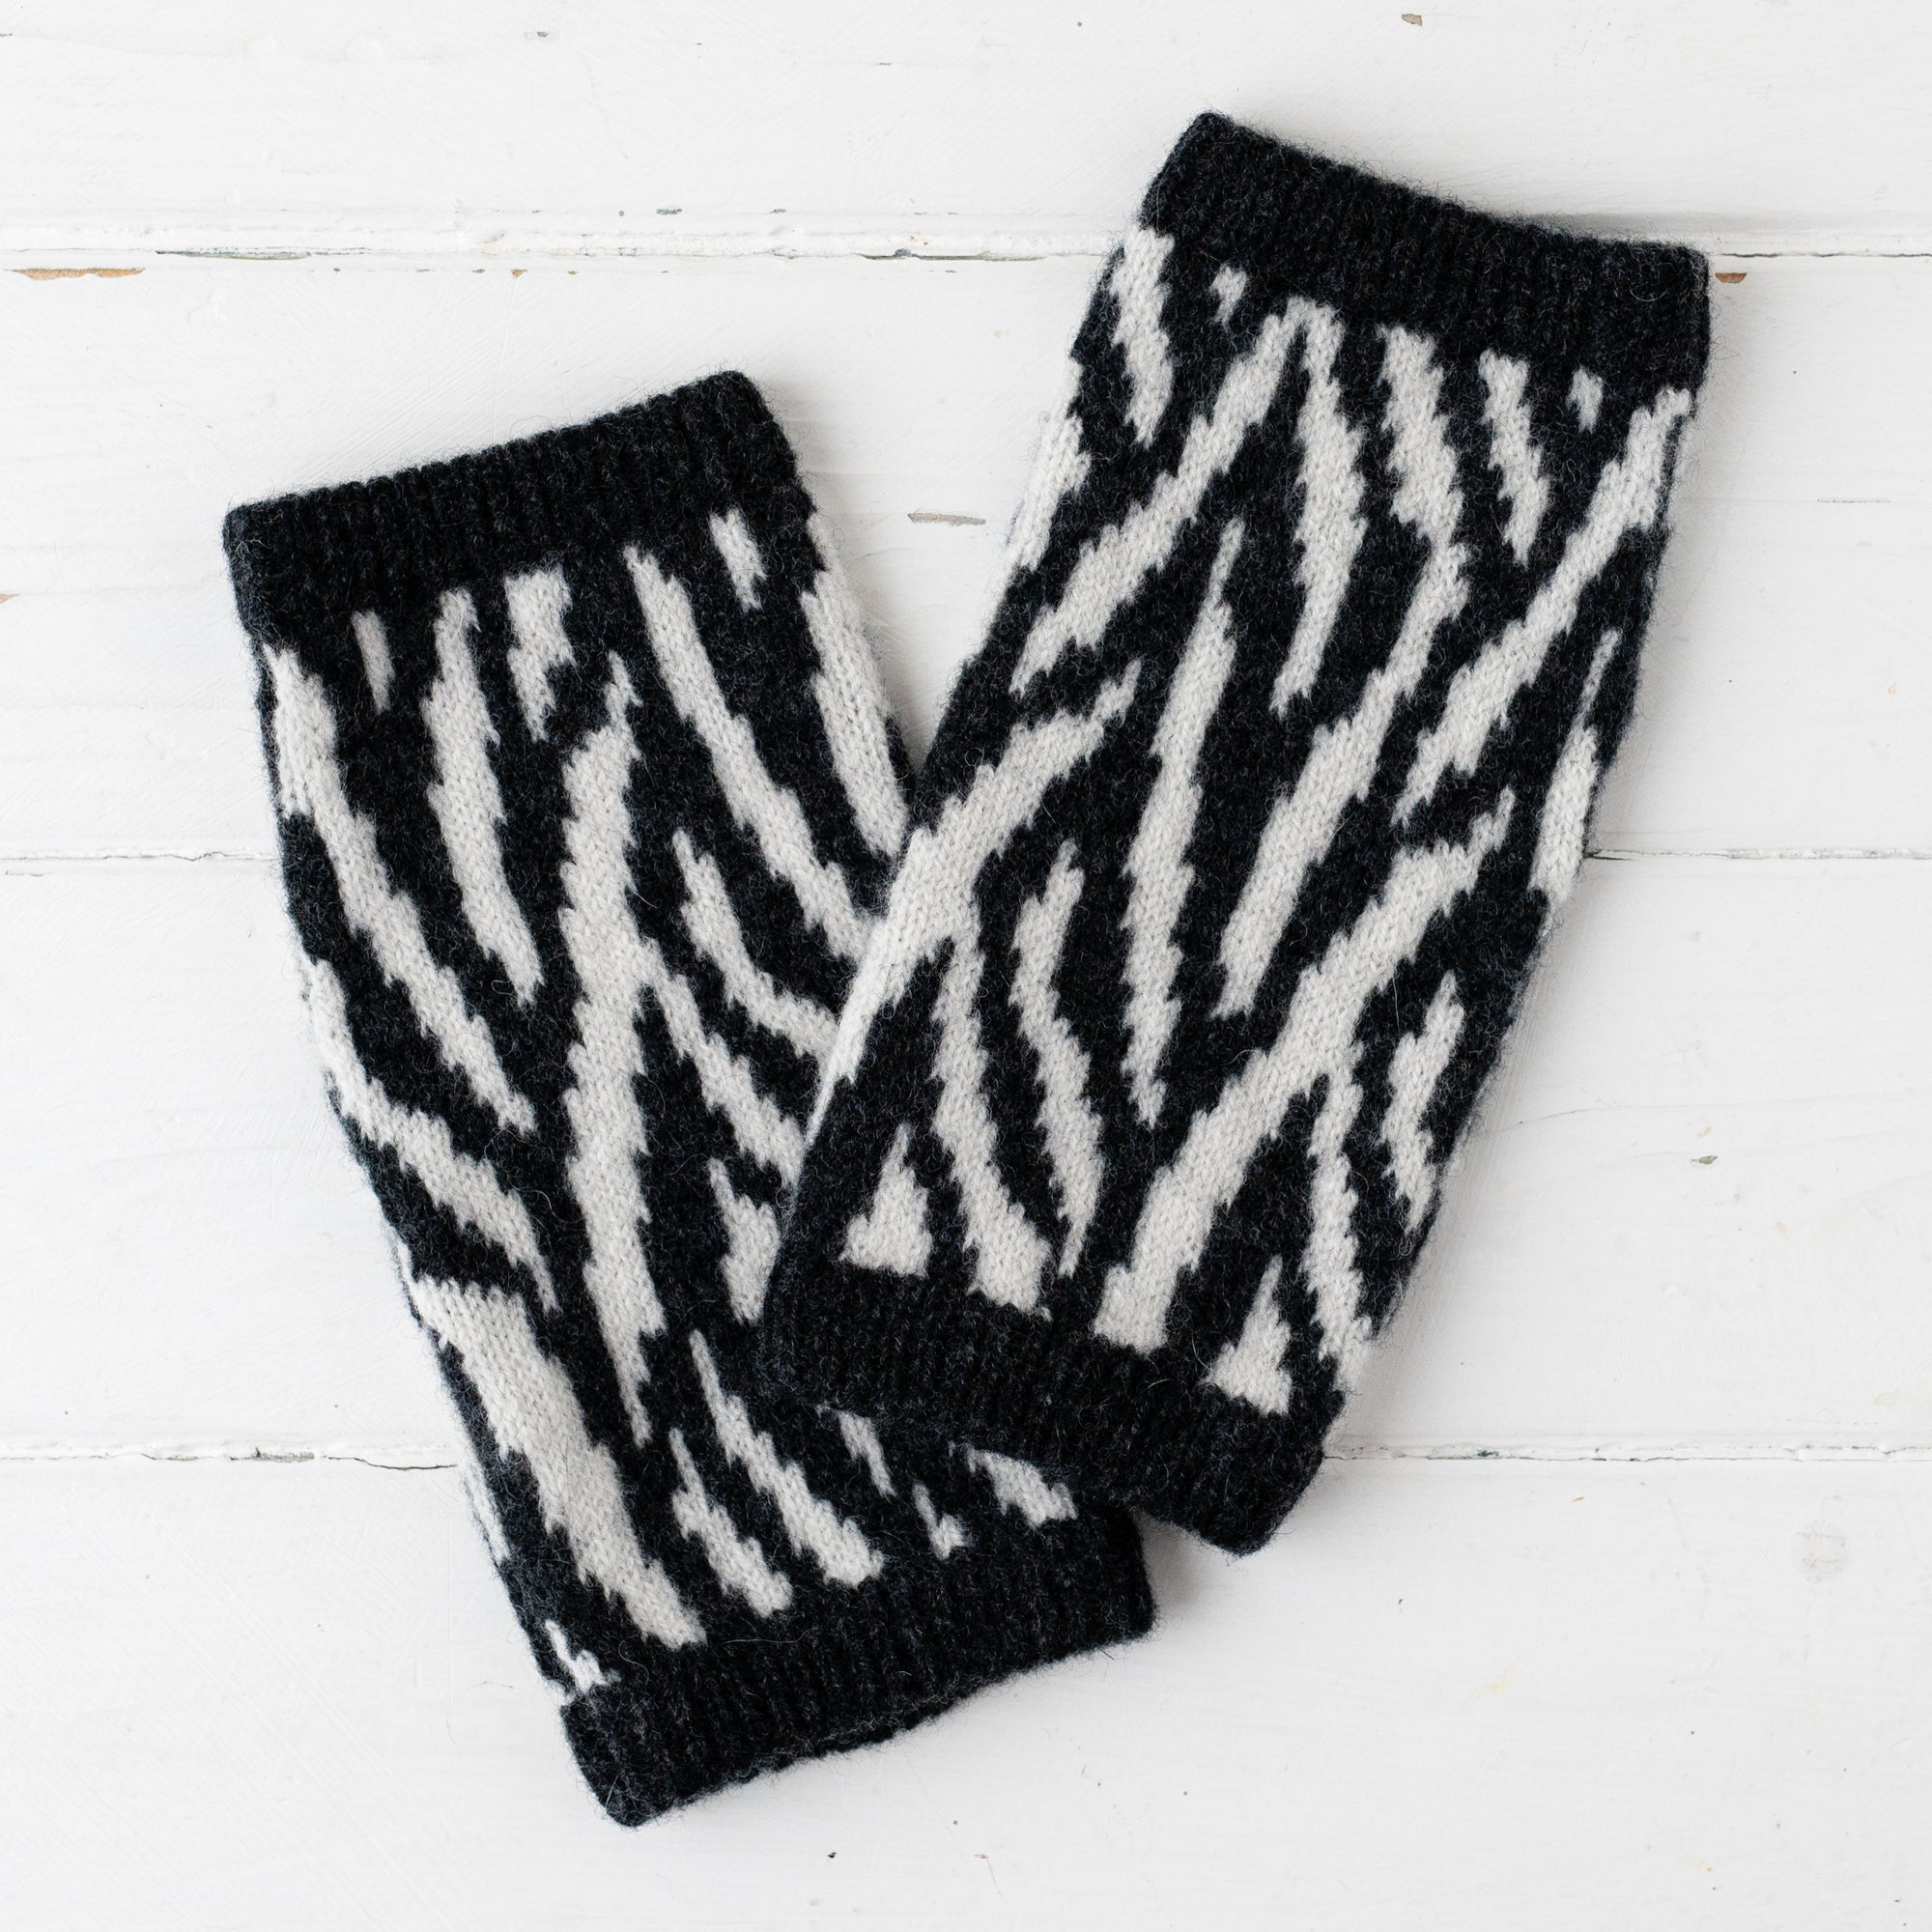 Zebra wrist warmers - monochrome